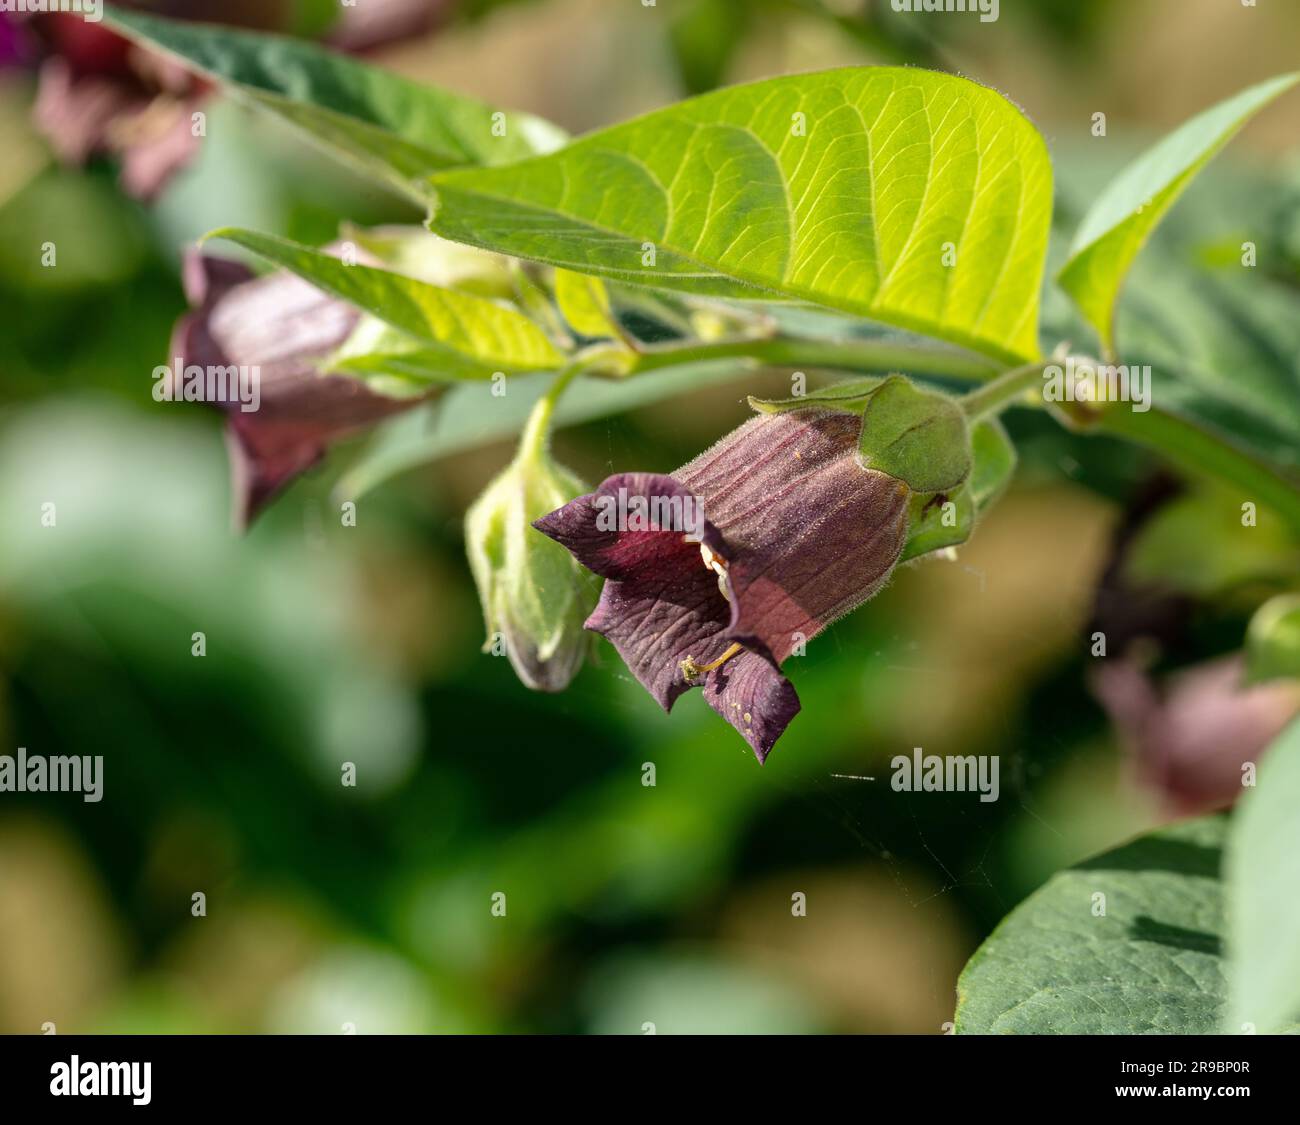 Deadly nightshade, Belladonna (Atropa belladonna) Stock Photo